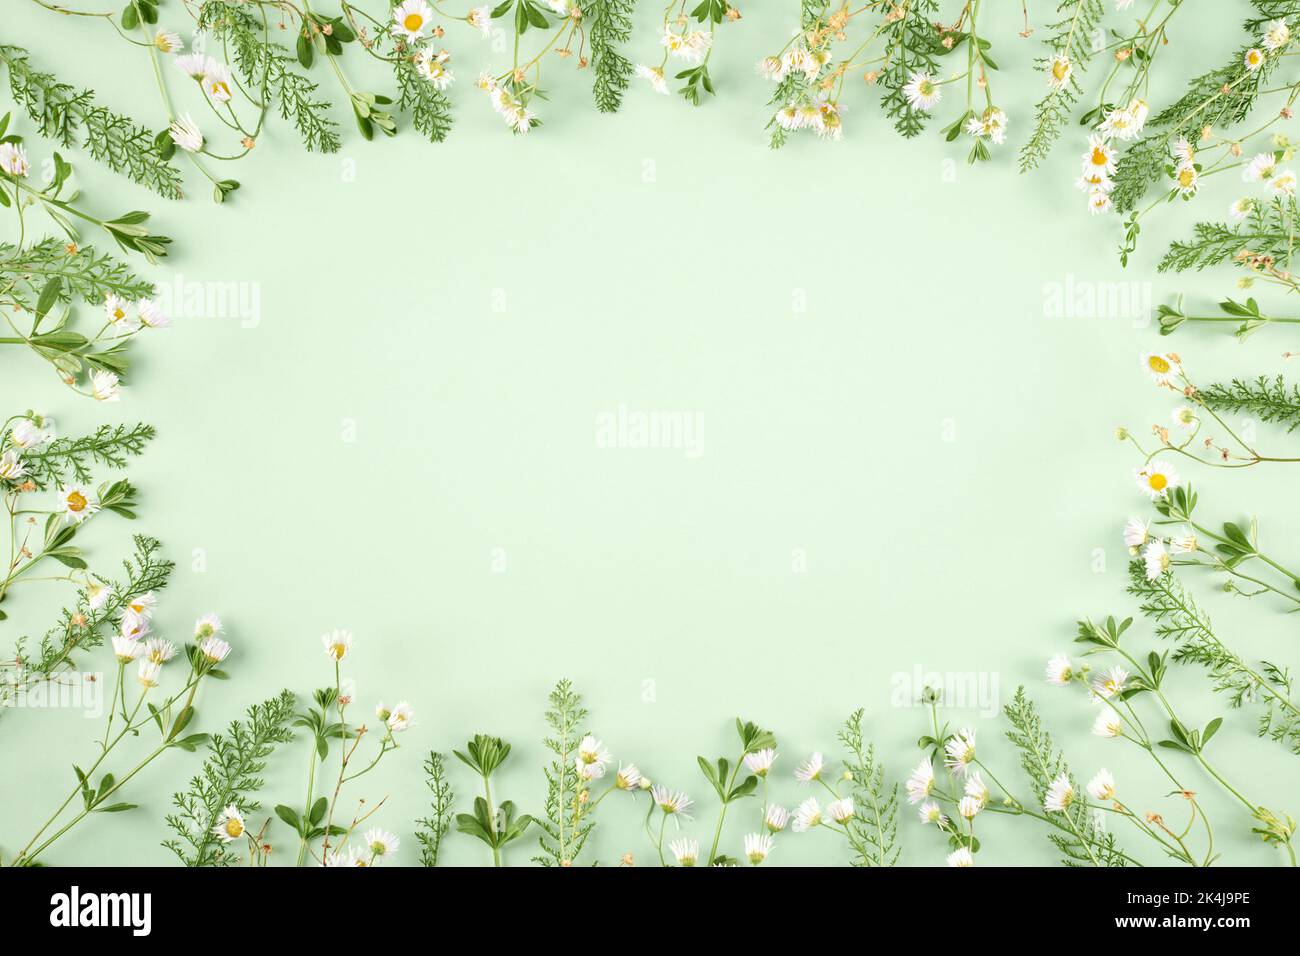 Pastellgrünes Gras mit weißen Blüten als ovaler Rahmen auf hellgrünem Hintergrund, minimale flache Lage mit Kopierraum Draufsicht. Minimalistischer Grüngras-Fla Stockfoto